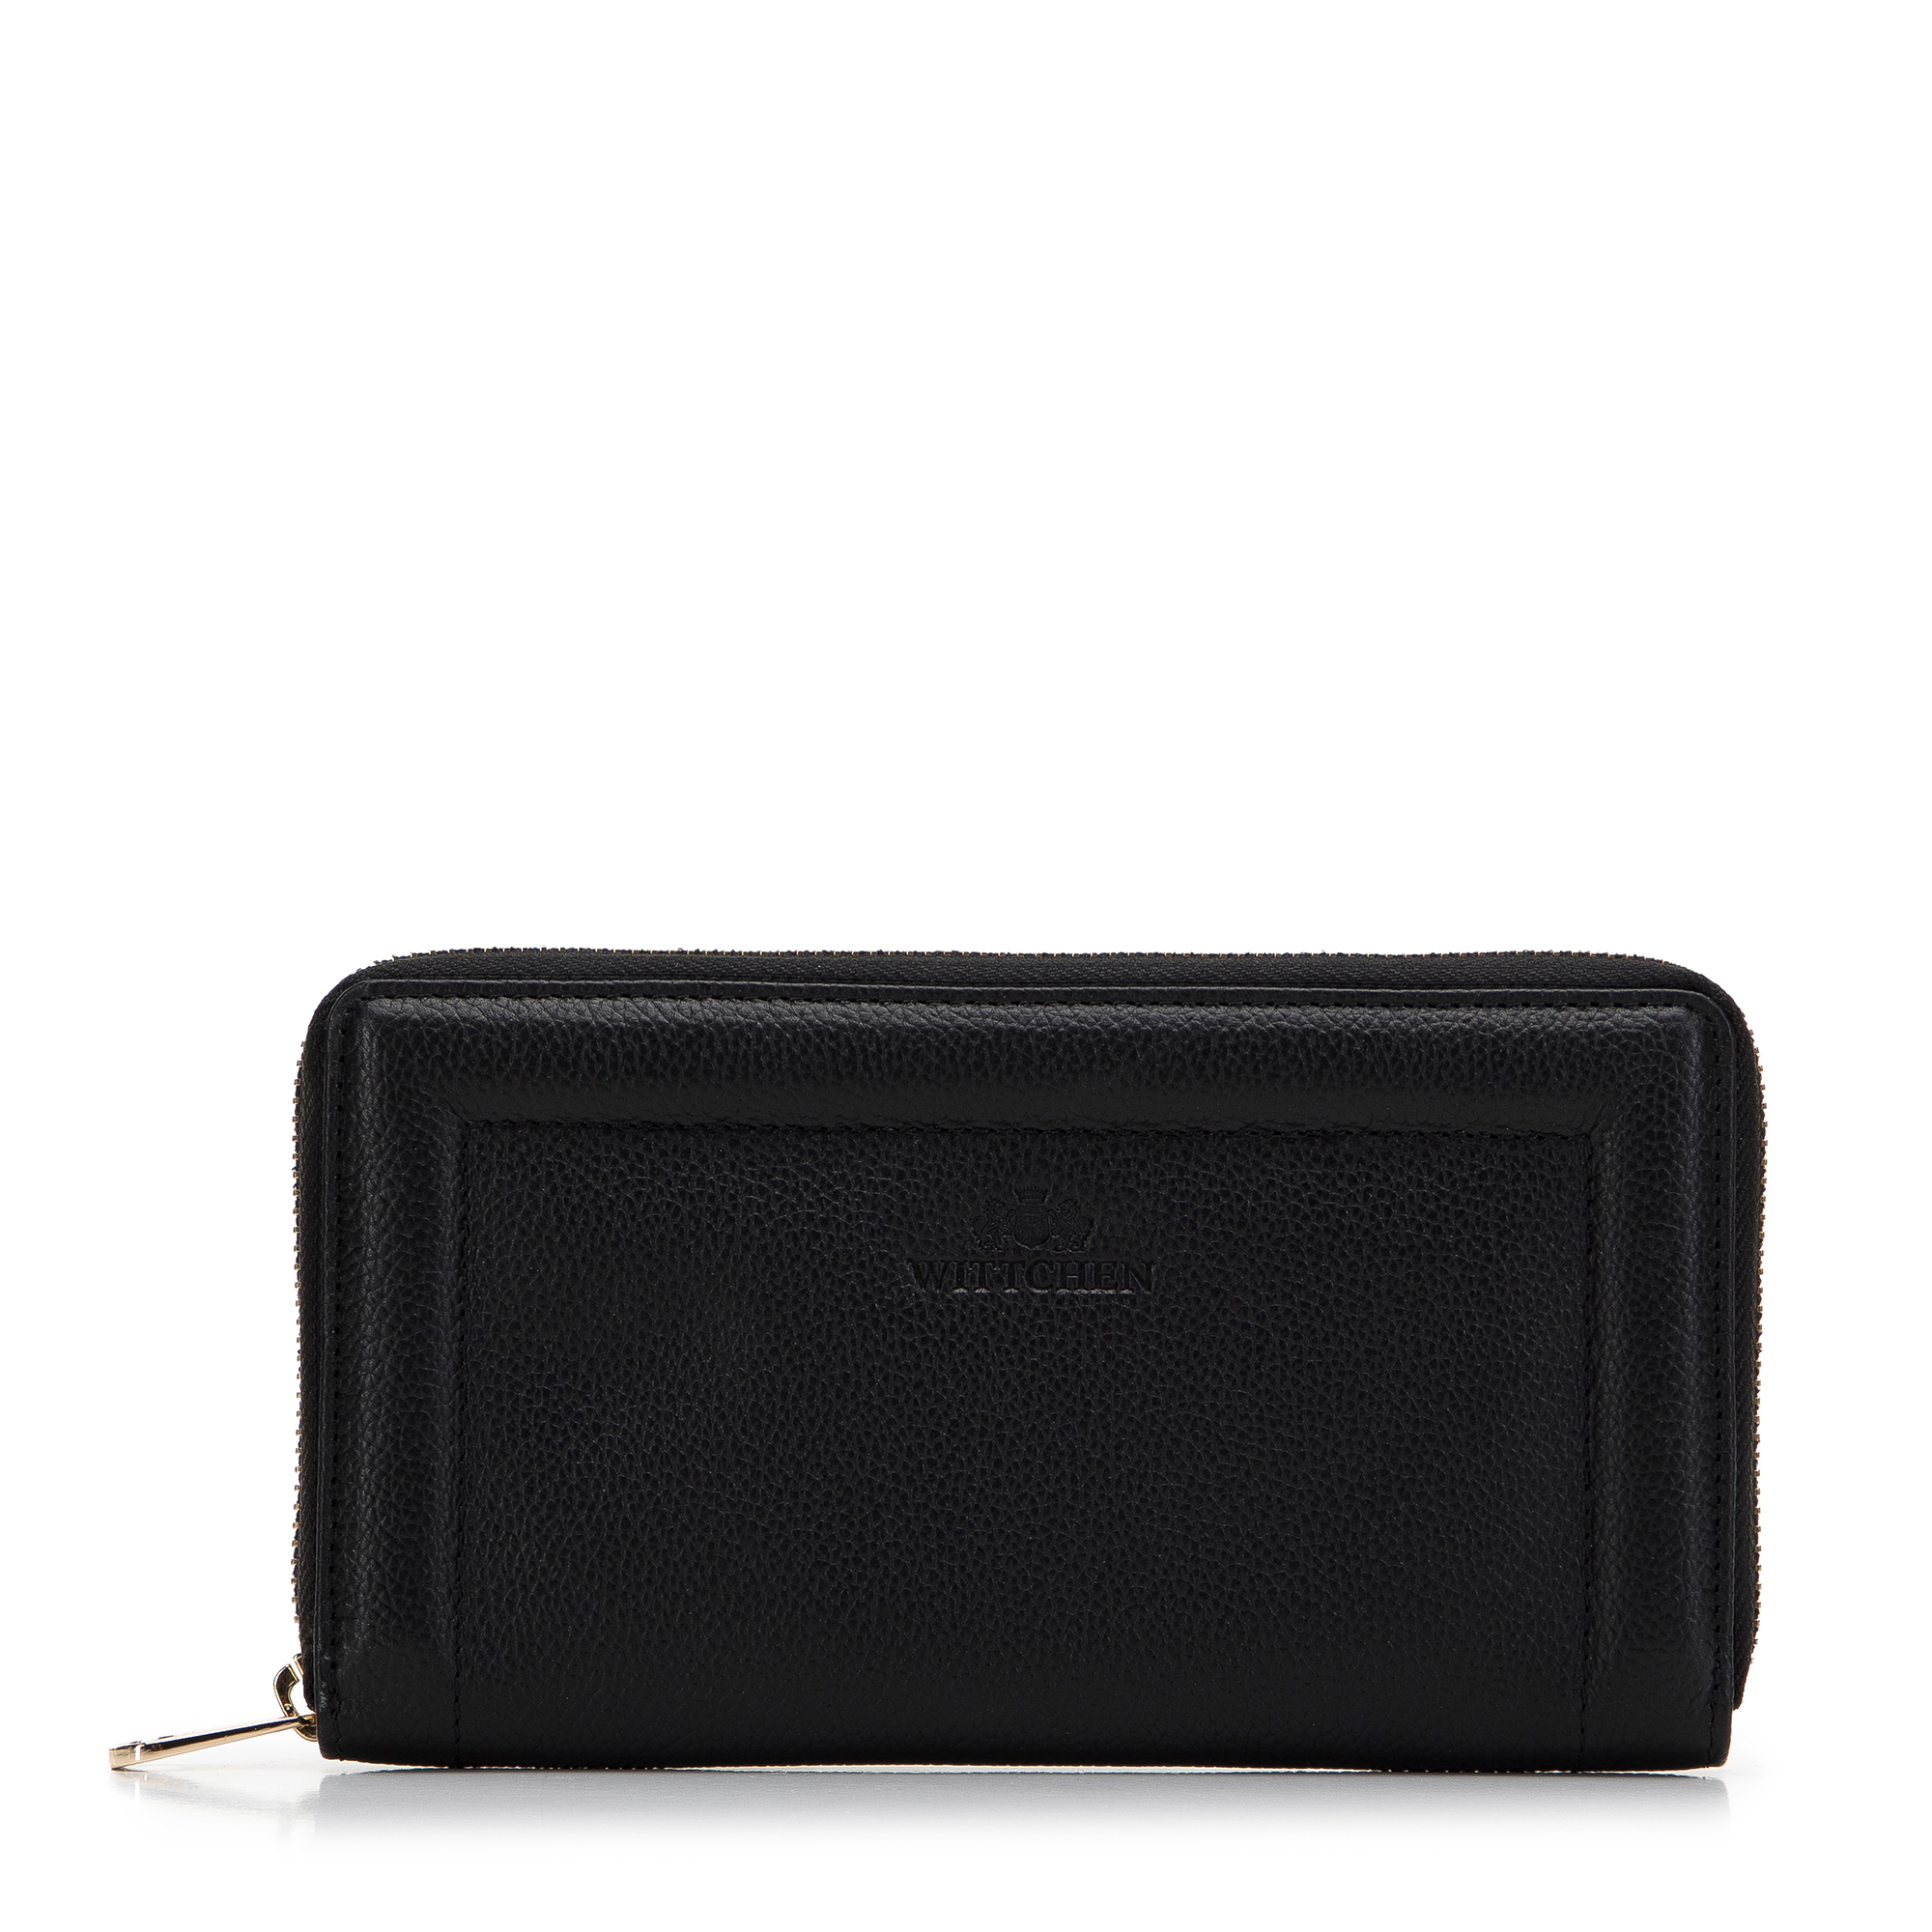 E-shop Dámska kožená peňaženka s ozdobným okrajom, veľká, čierna 14-1-936-1